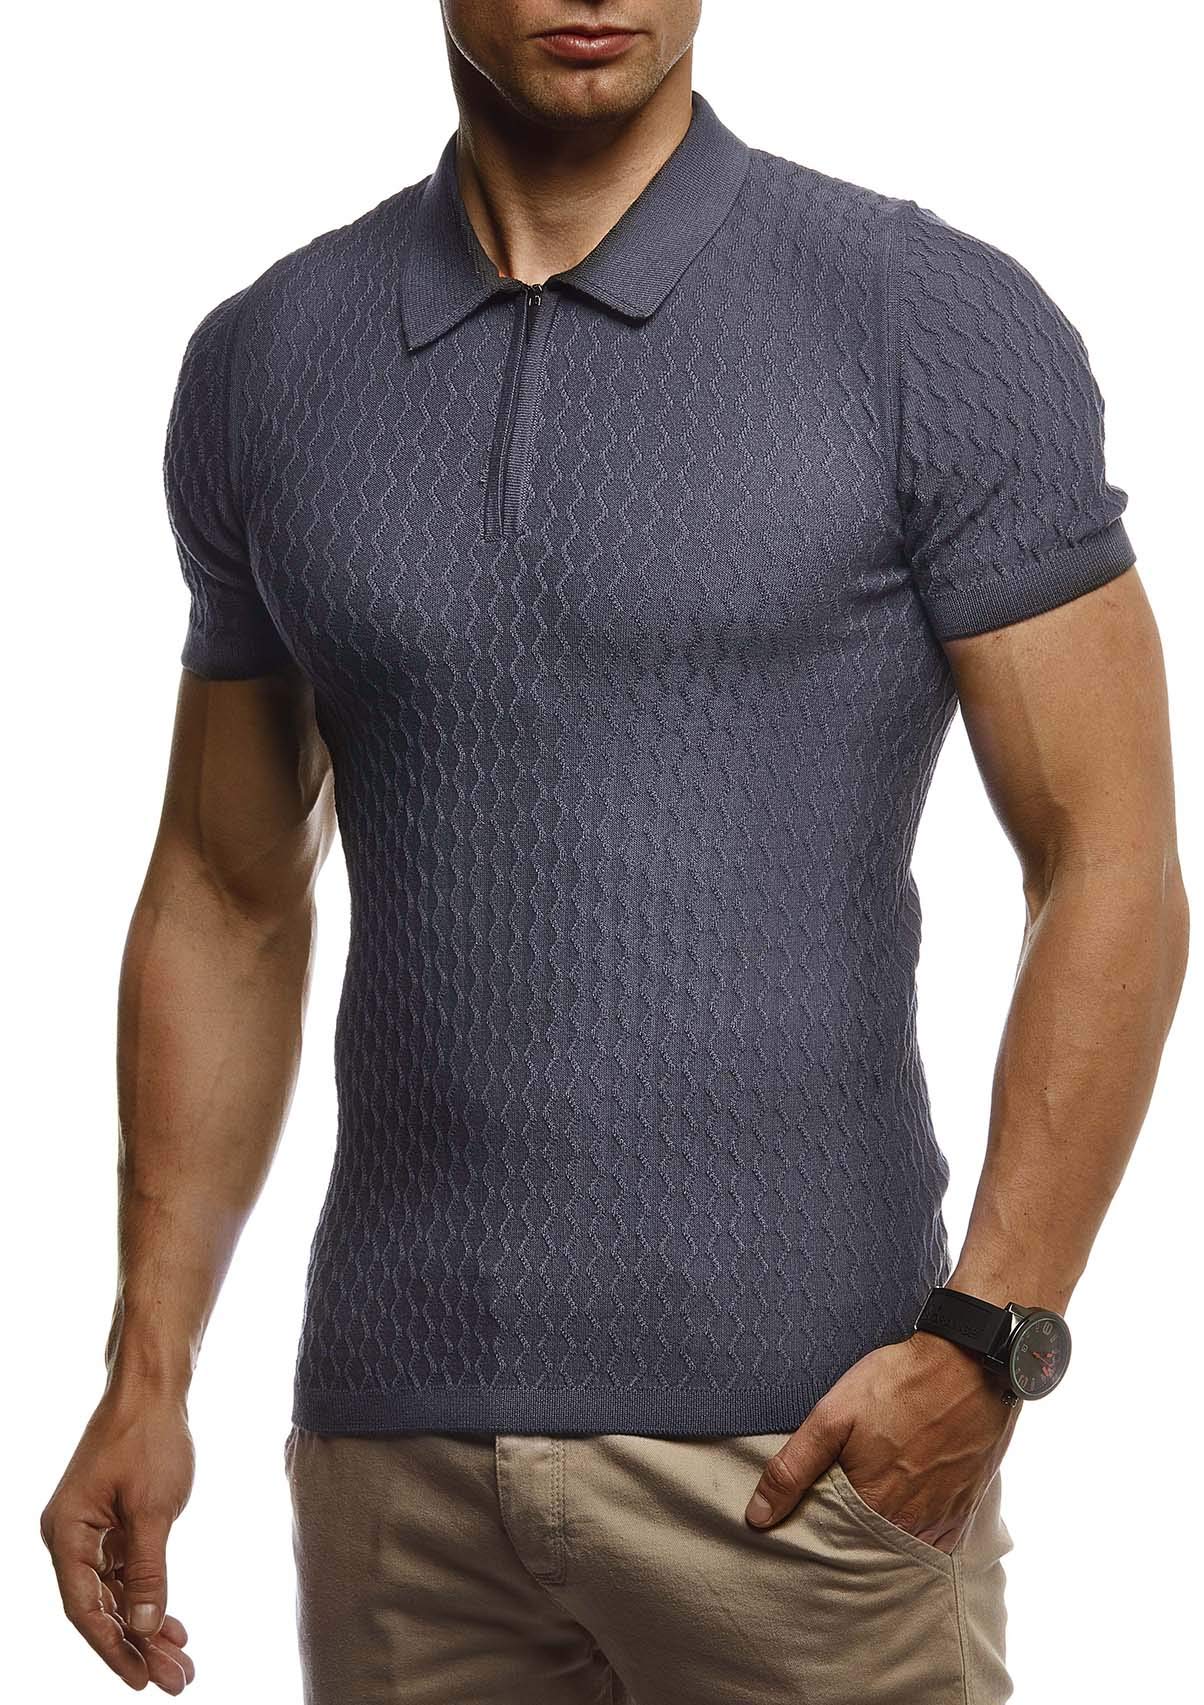 Leif Nelson Sommer Poloshirt Kurzarm Herren T-Shirt Kragen (Grau, Größe XL) - Casual Männer Poloshirts lang Feinstrick - Polo Shirt for Men Tshirt